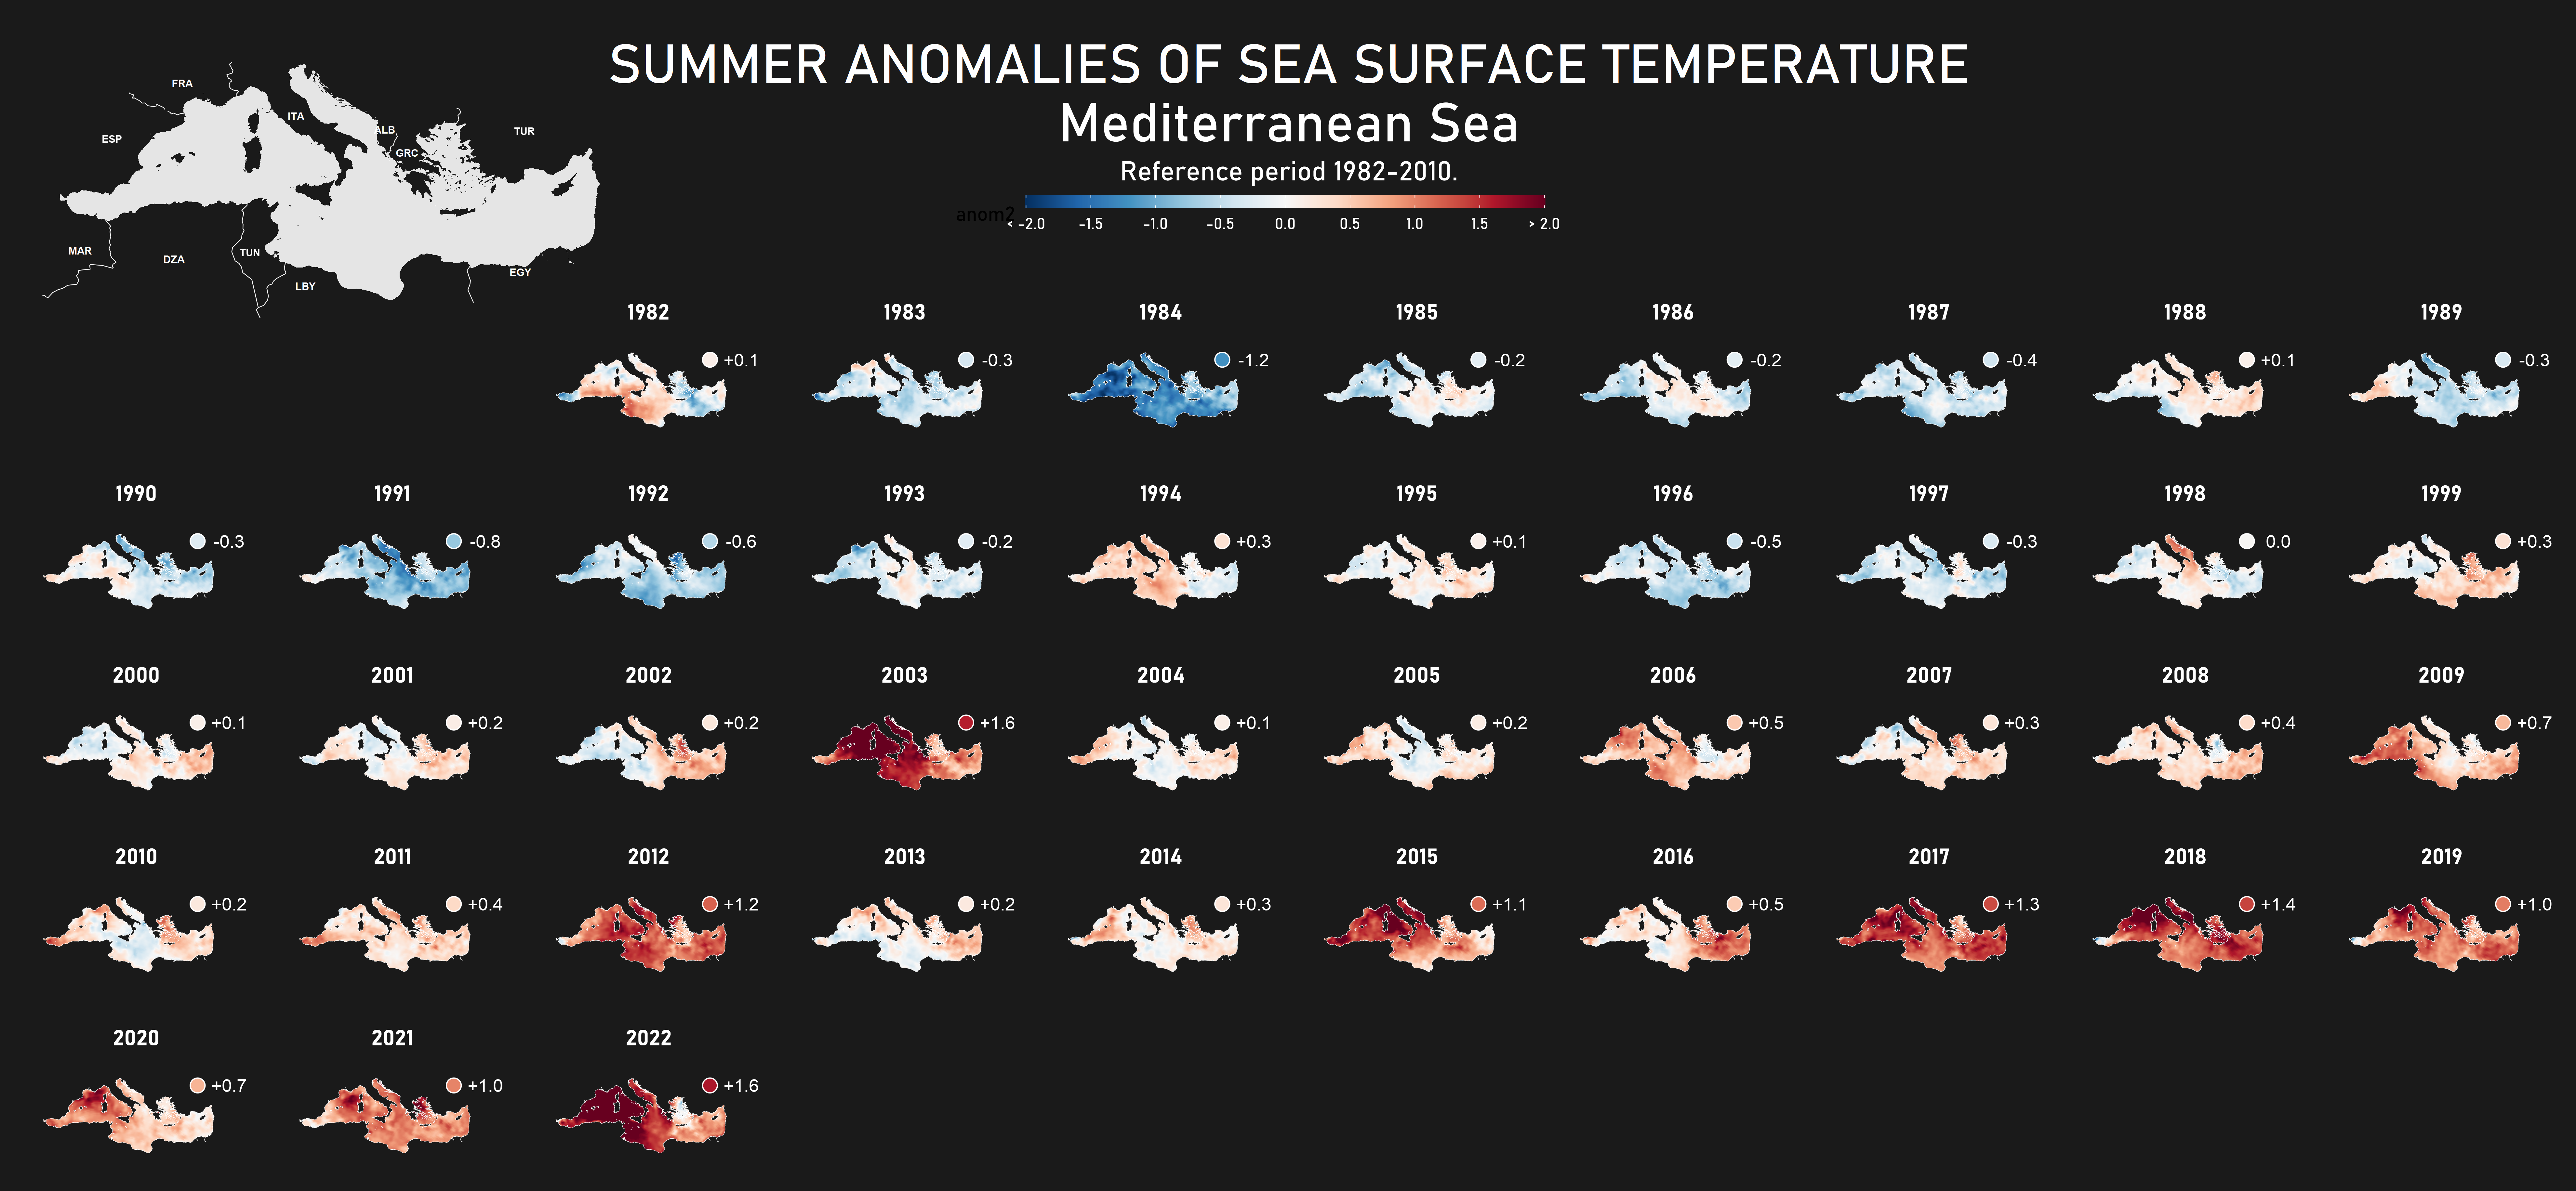 Distribución espacial de las anomalías estivales de la temperatura de superficie del mar Mediterráneo.